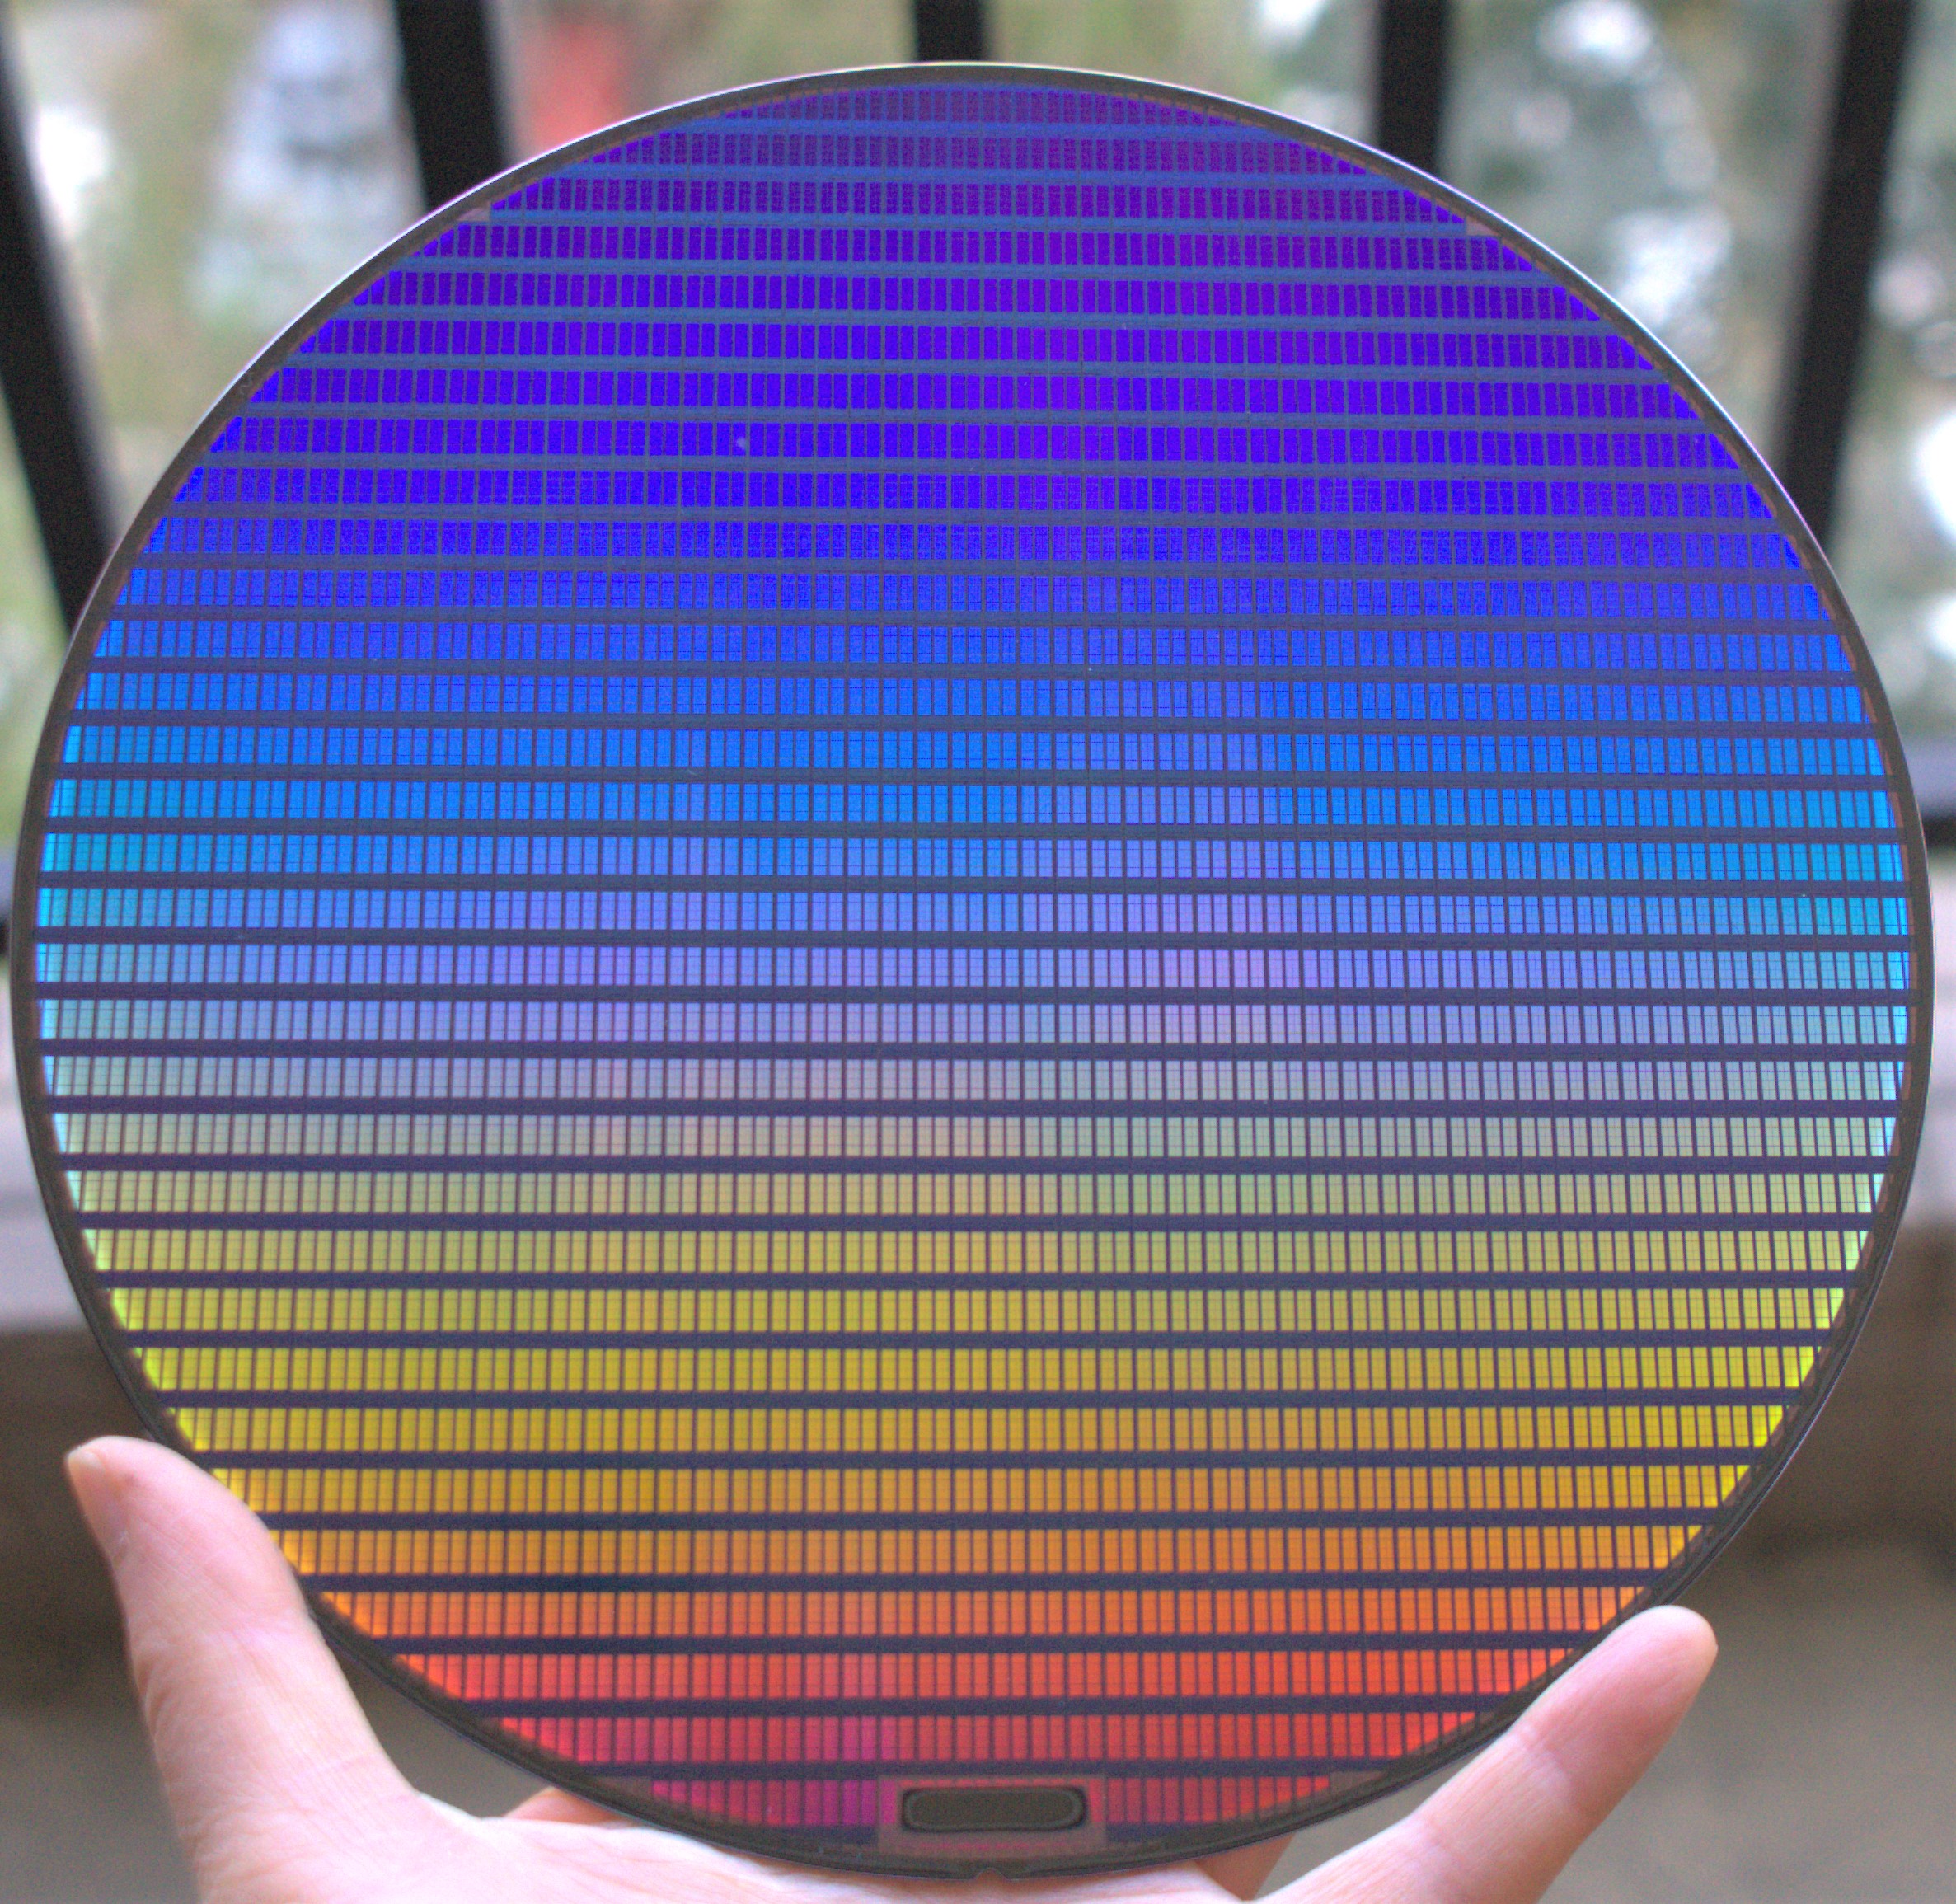 中芯国际 晶圆wafer CMOS硅片半导体光刻片 芯片集成电路小米华为